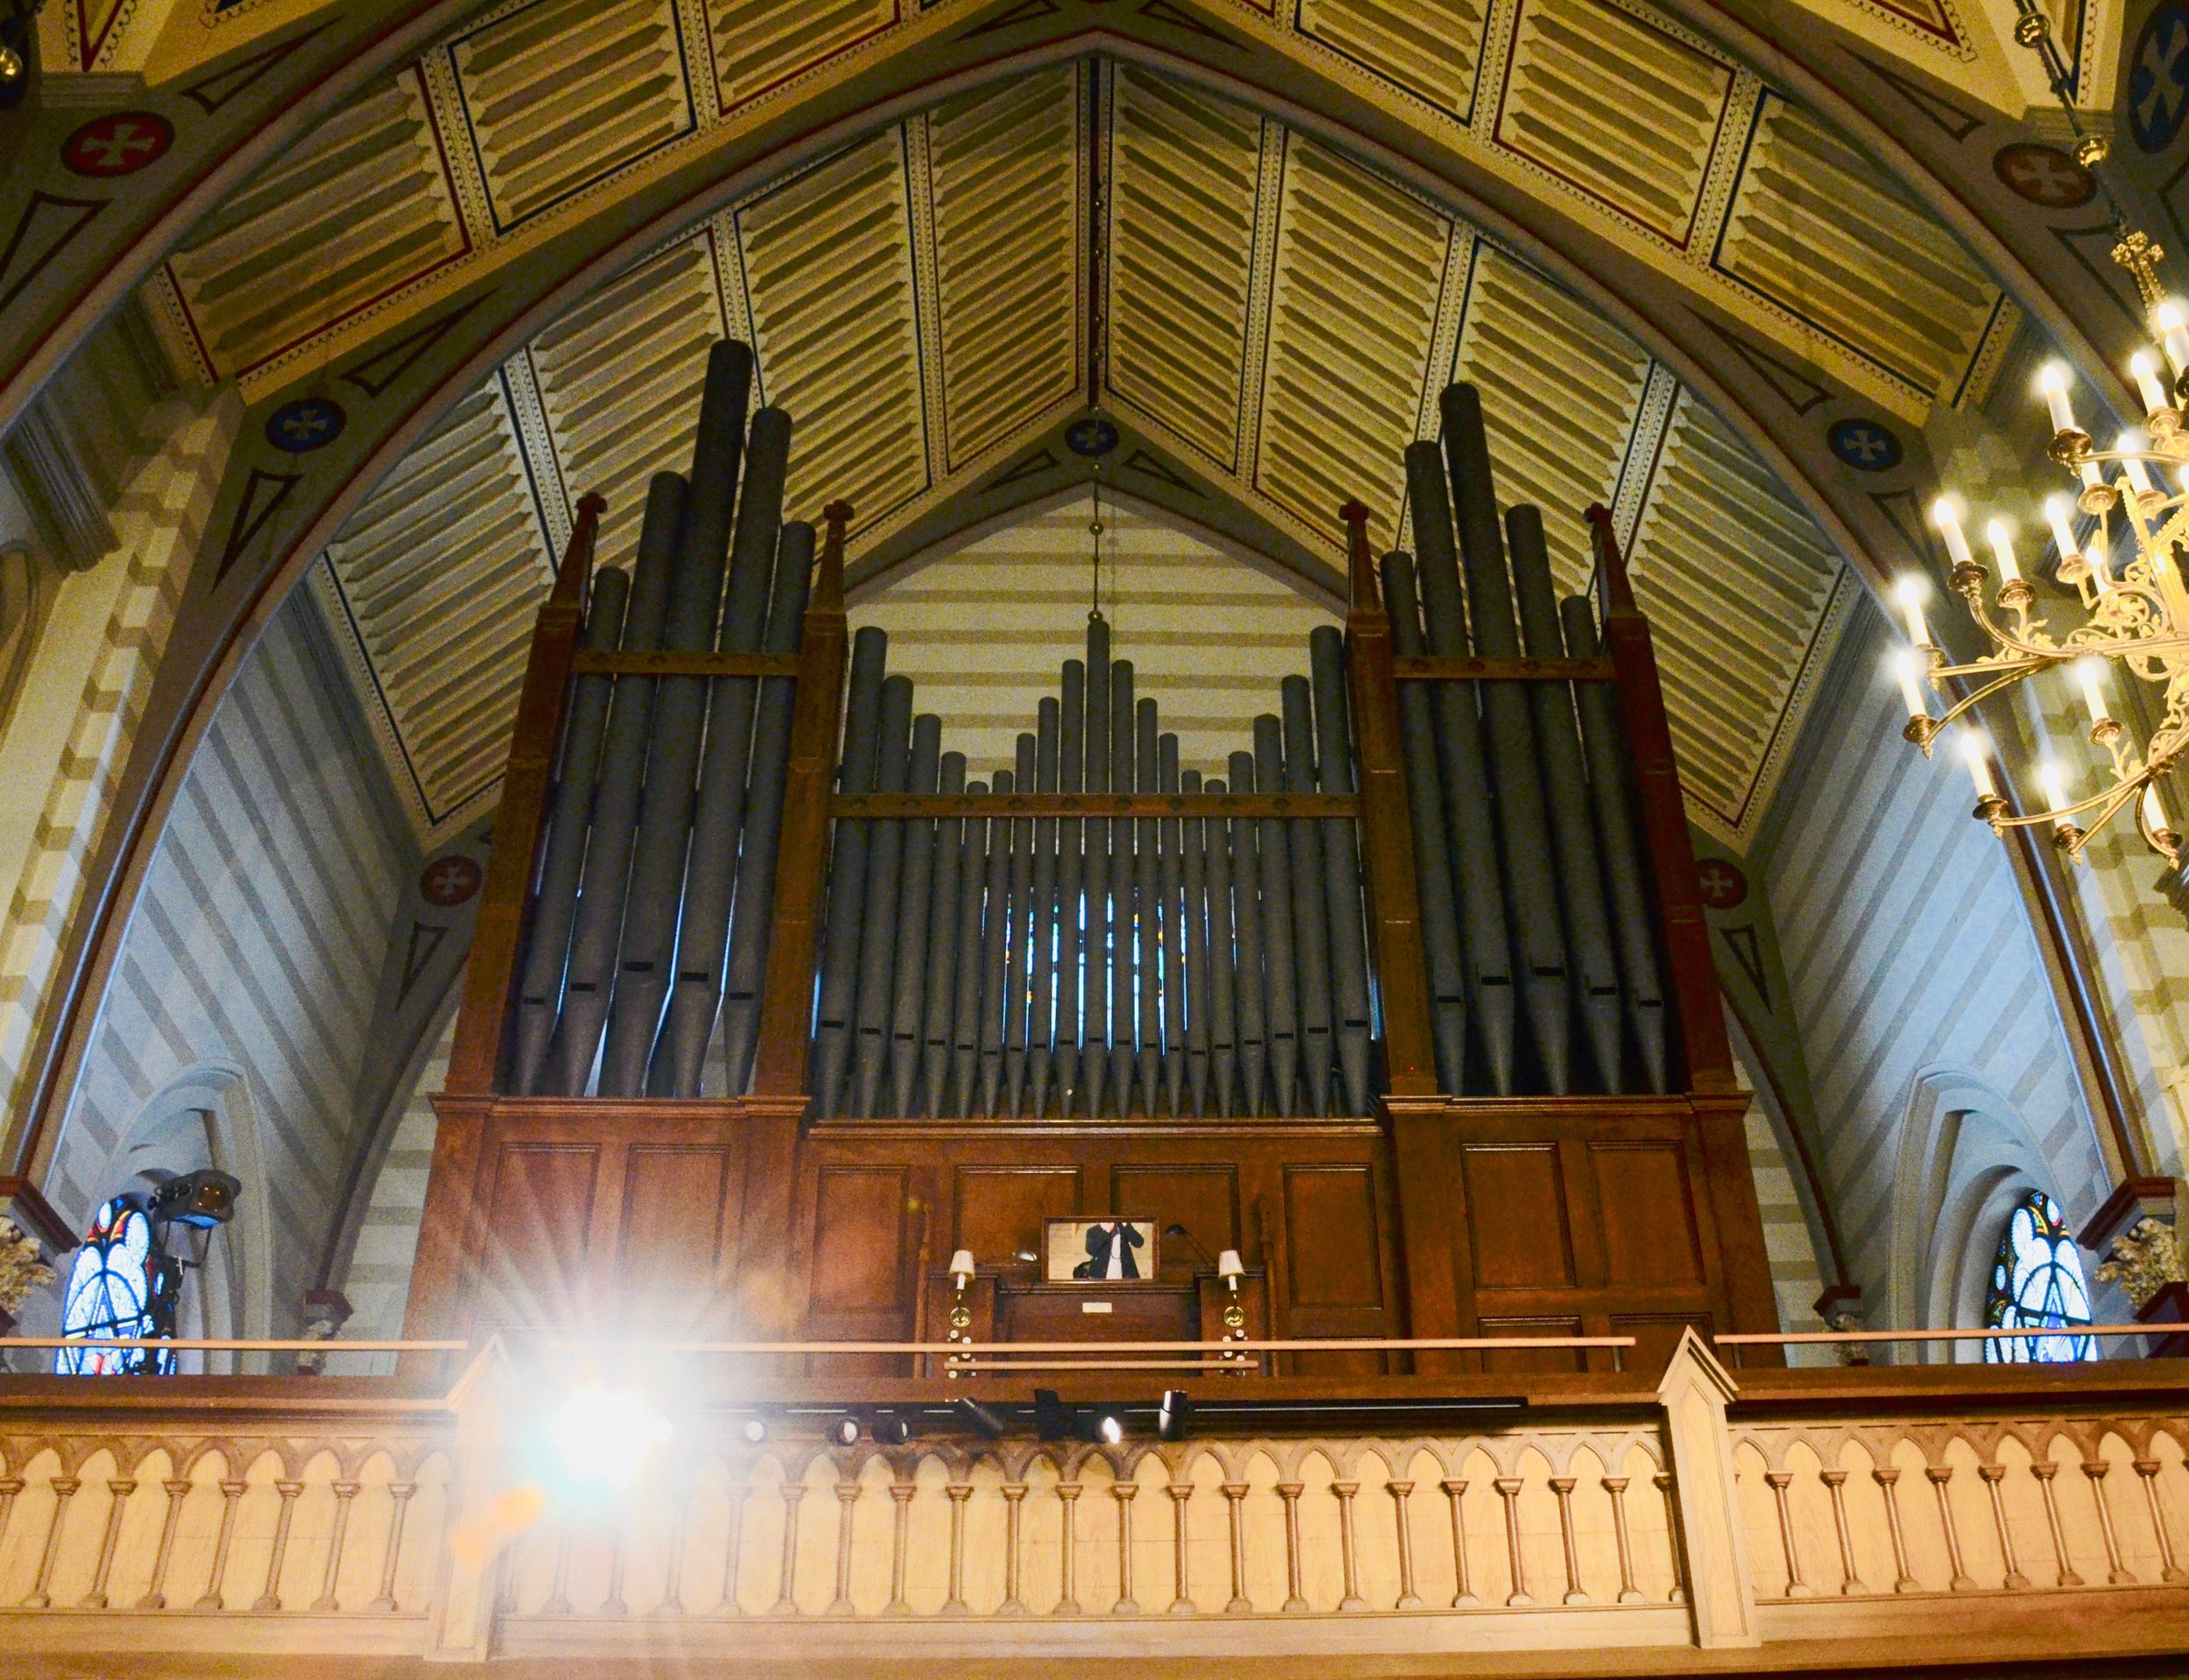  1871 Willis Organ in Örgryte New Church, Göteborg, Sweden. 